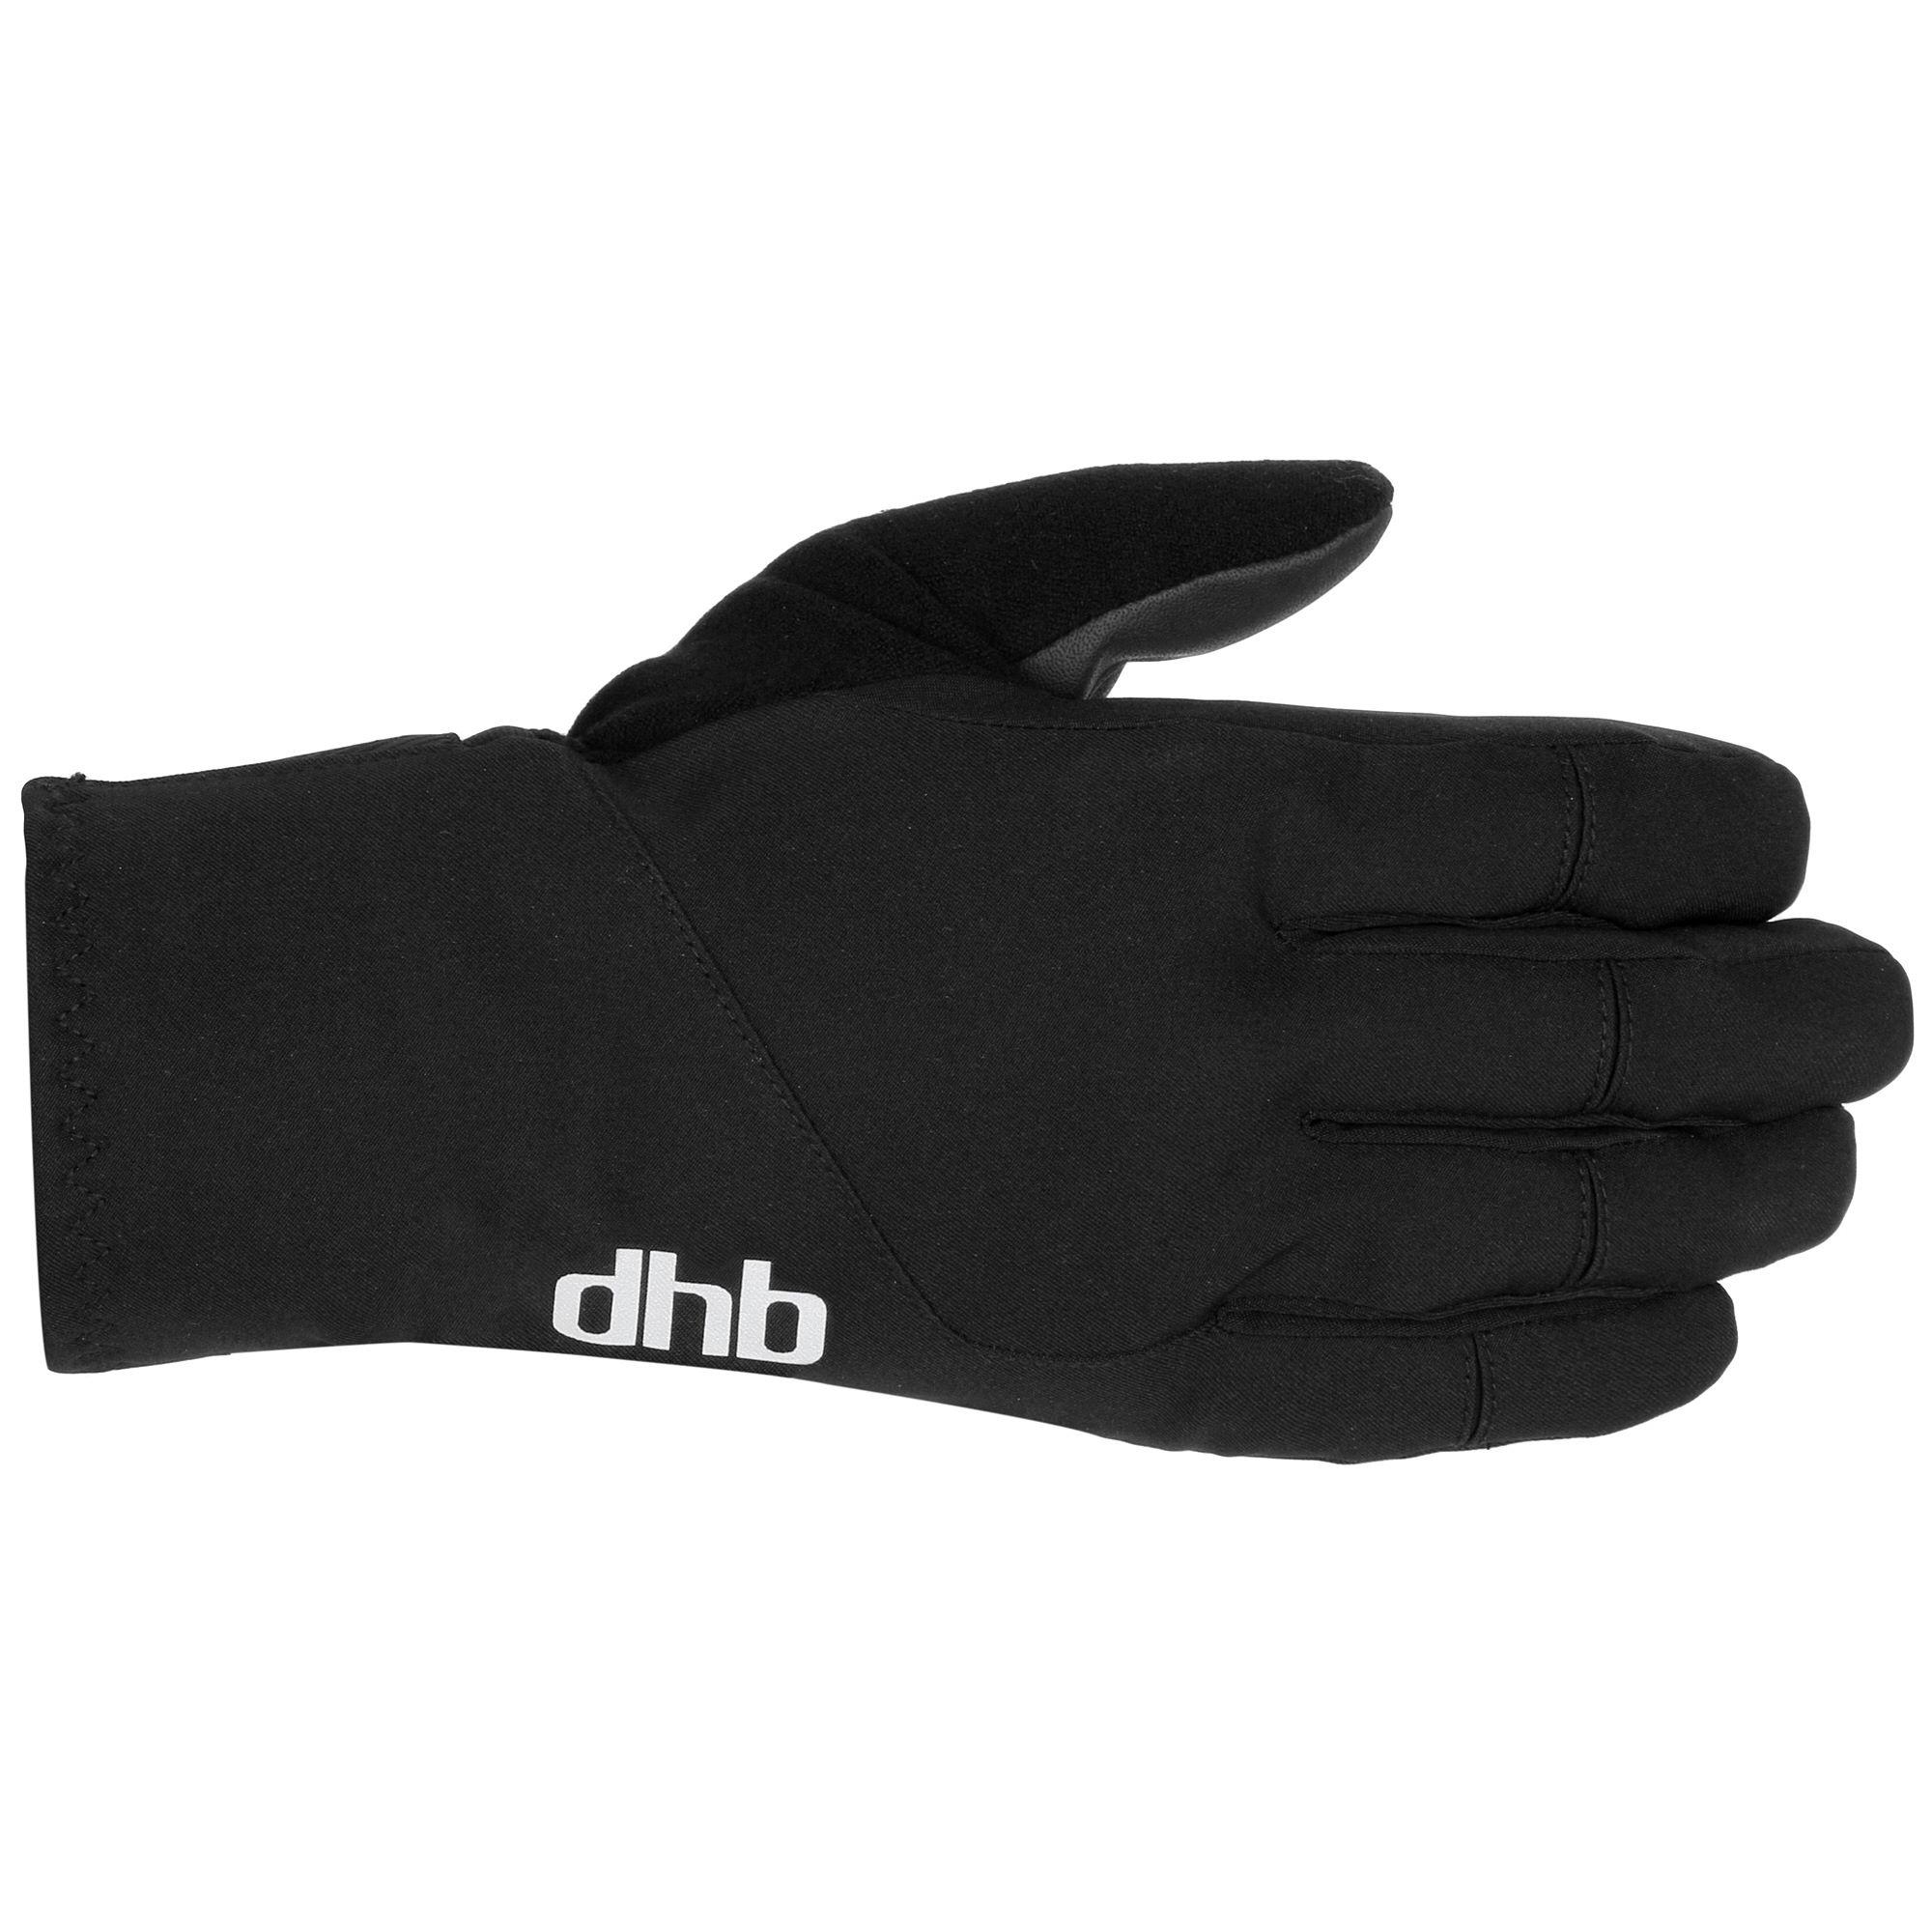 Dhb Extreme Winter Gloves  Black